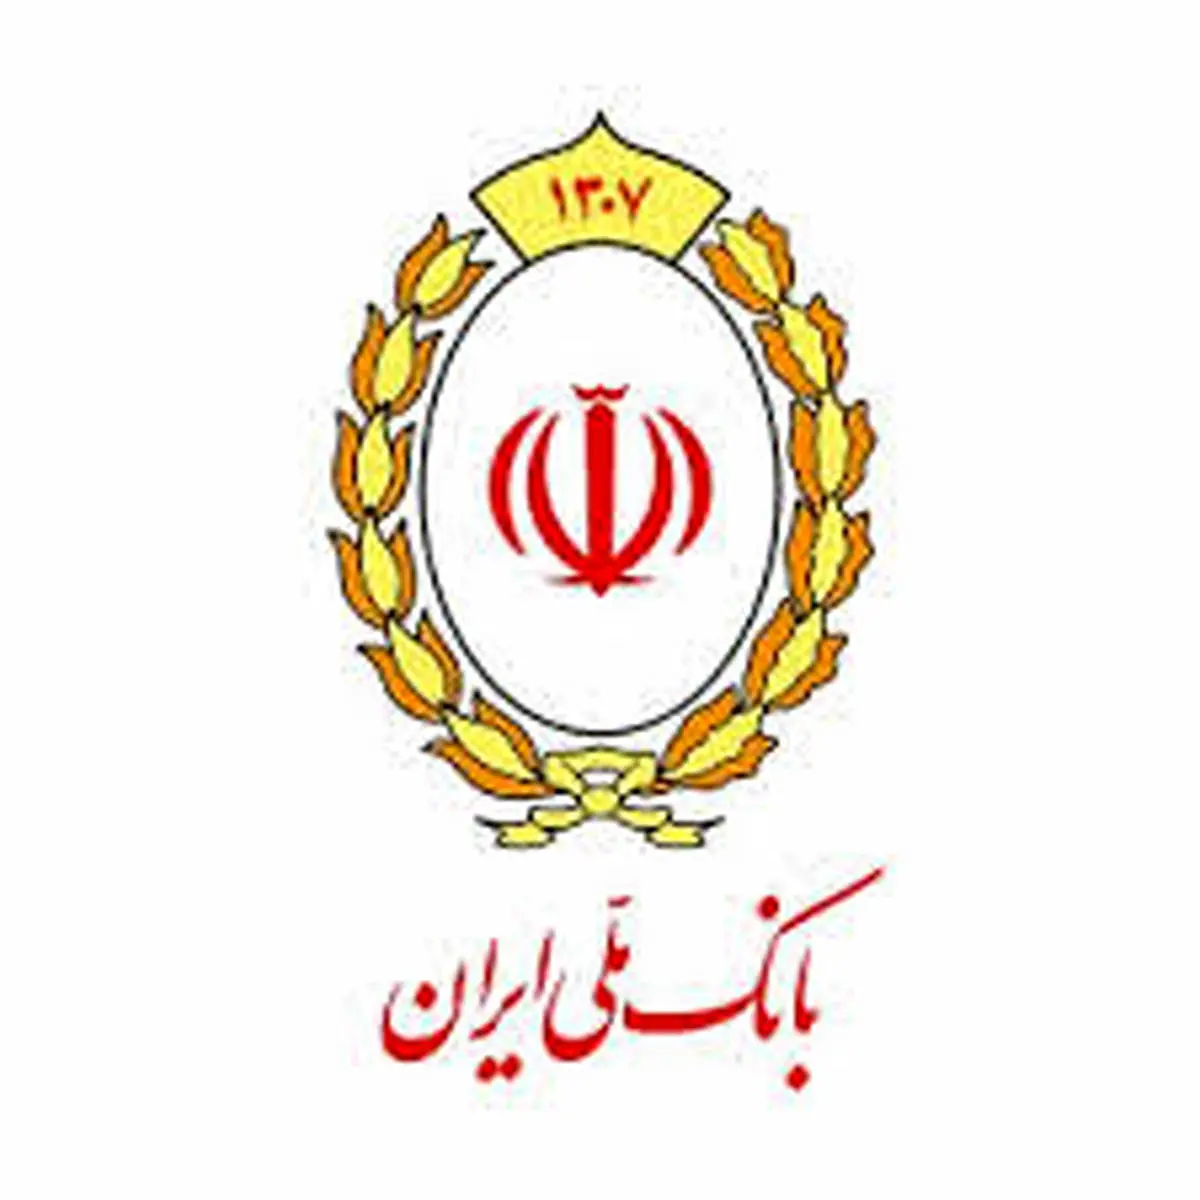 تمدید تاریخ انقضای کارت های بانک ملی ایران